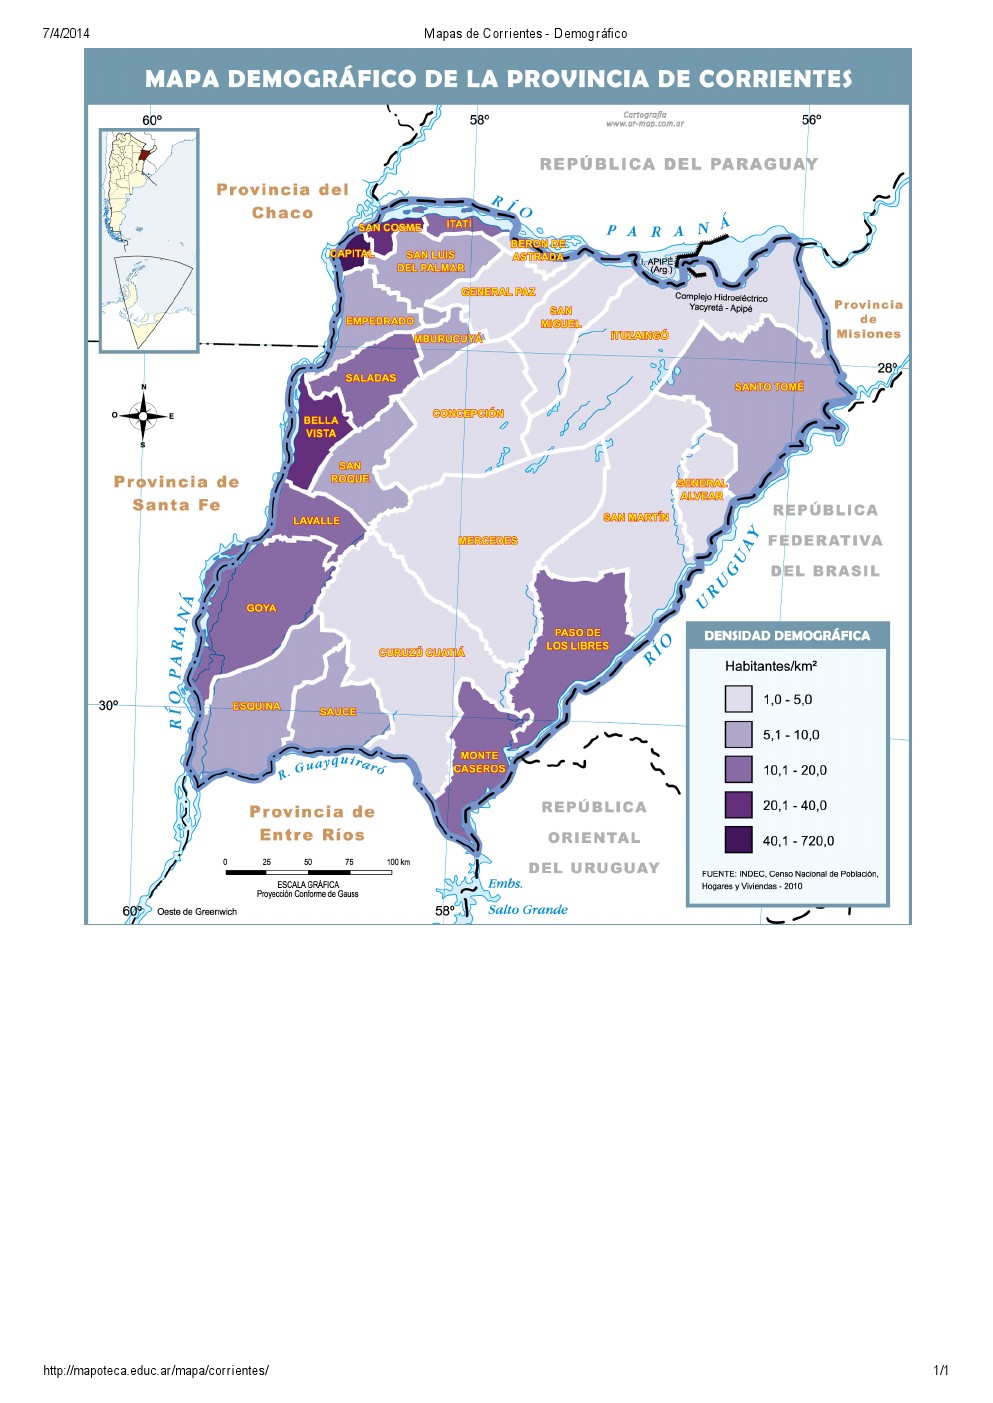 Mapa demográfico de Corrientes. Mapoteca de Educ.ar